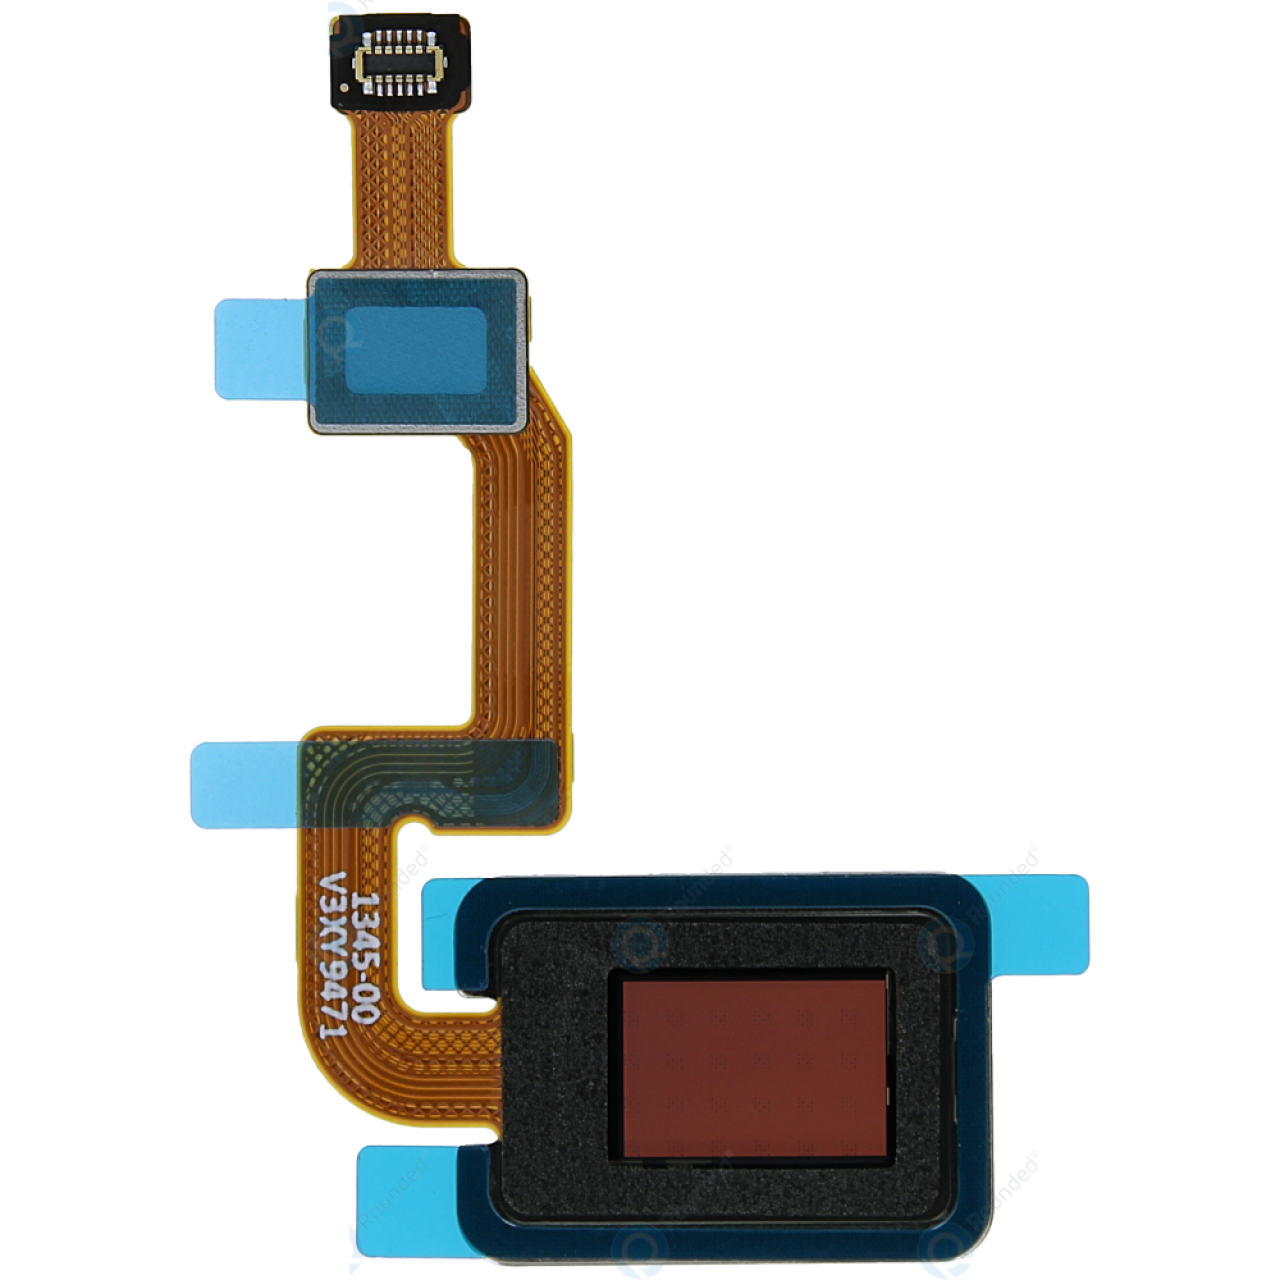 Xıaomi Mi Note 10 Pro M1910F4S Home Button Fingerprint Touch Id Sensor Connector Flex Cable